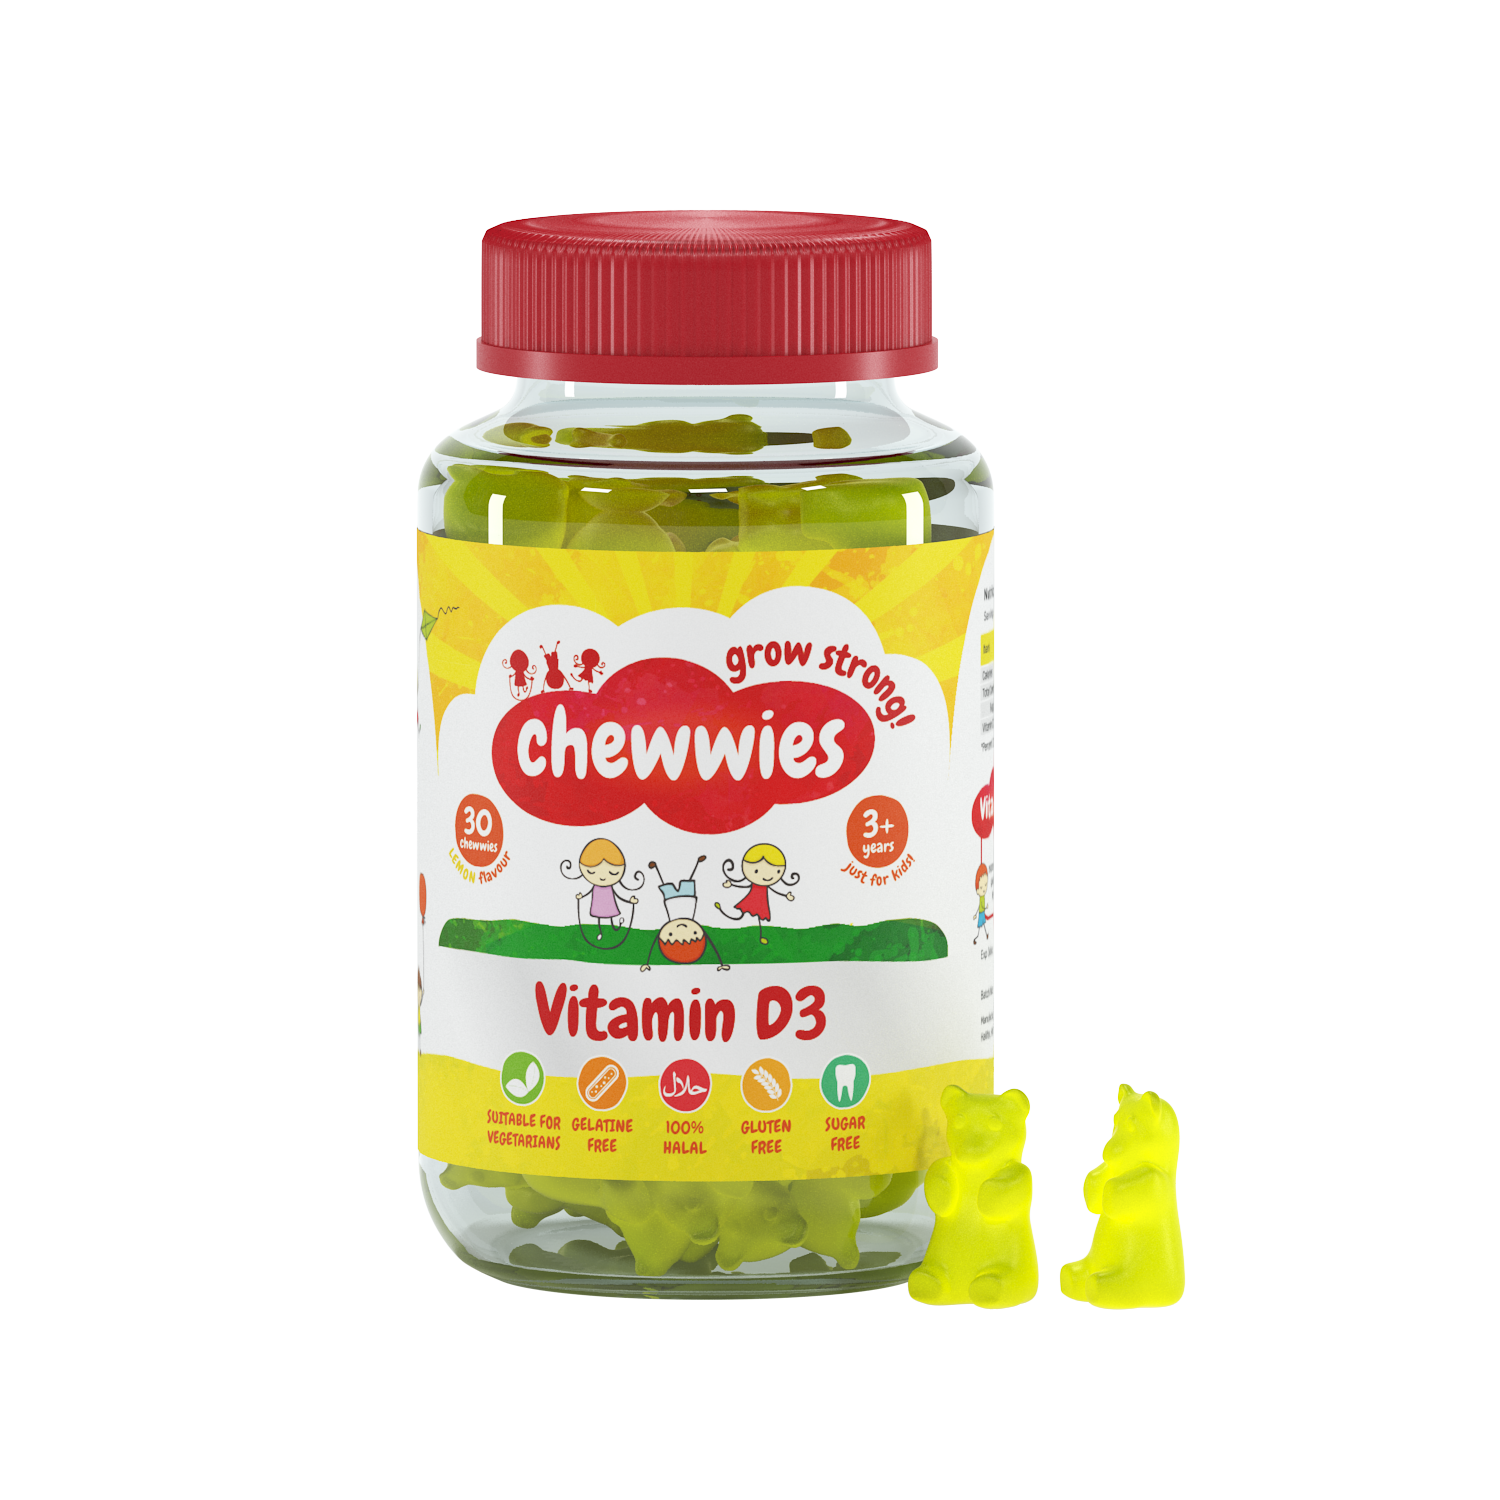 Chewwies Vitamin D3, 30 caramelle gommose vegane senza zucchero con estratti di agrumi per favorire una crescita e uno sviluppo sani.